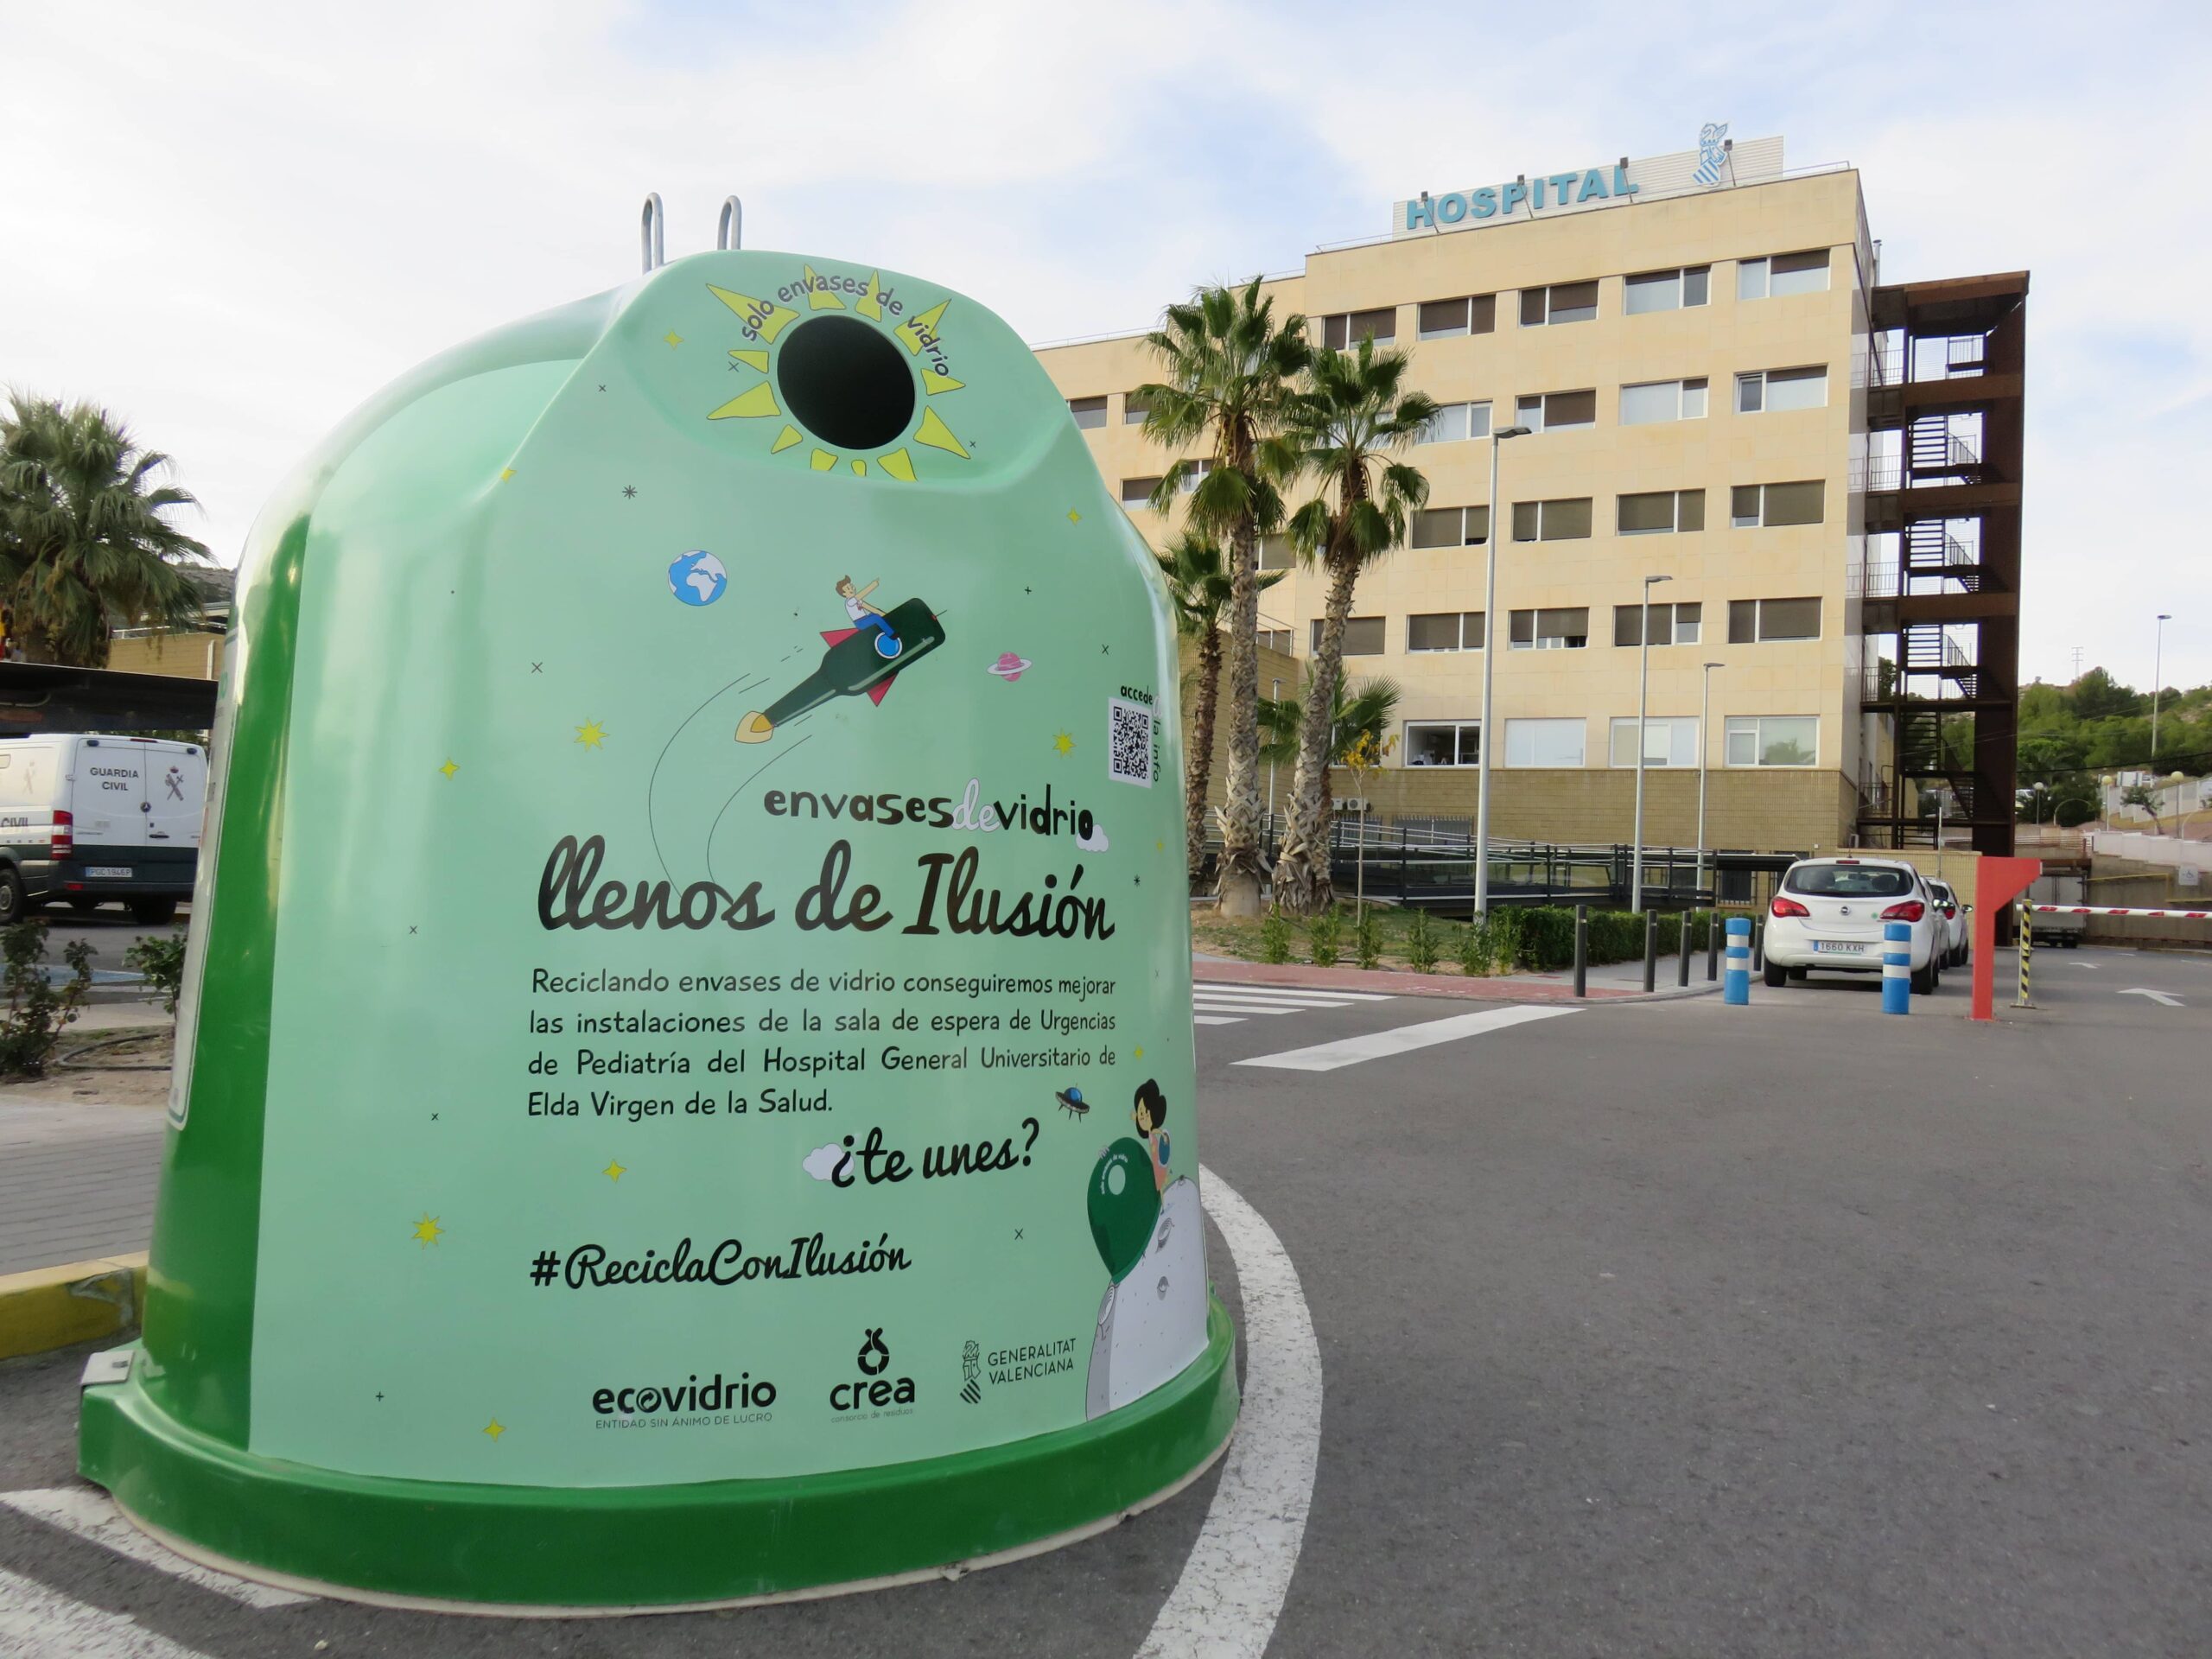 La campaña de Ecovidrio “Llenos de ilusión” llega a su recta final con un 9% de incremento en la tasa de reciclaje de vidrio